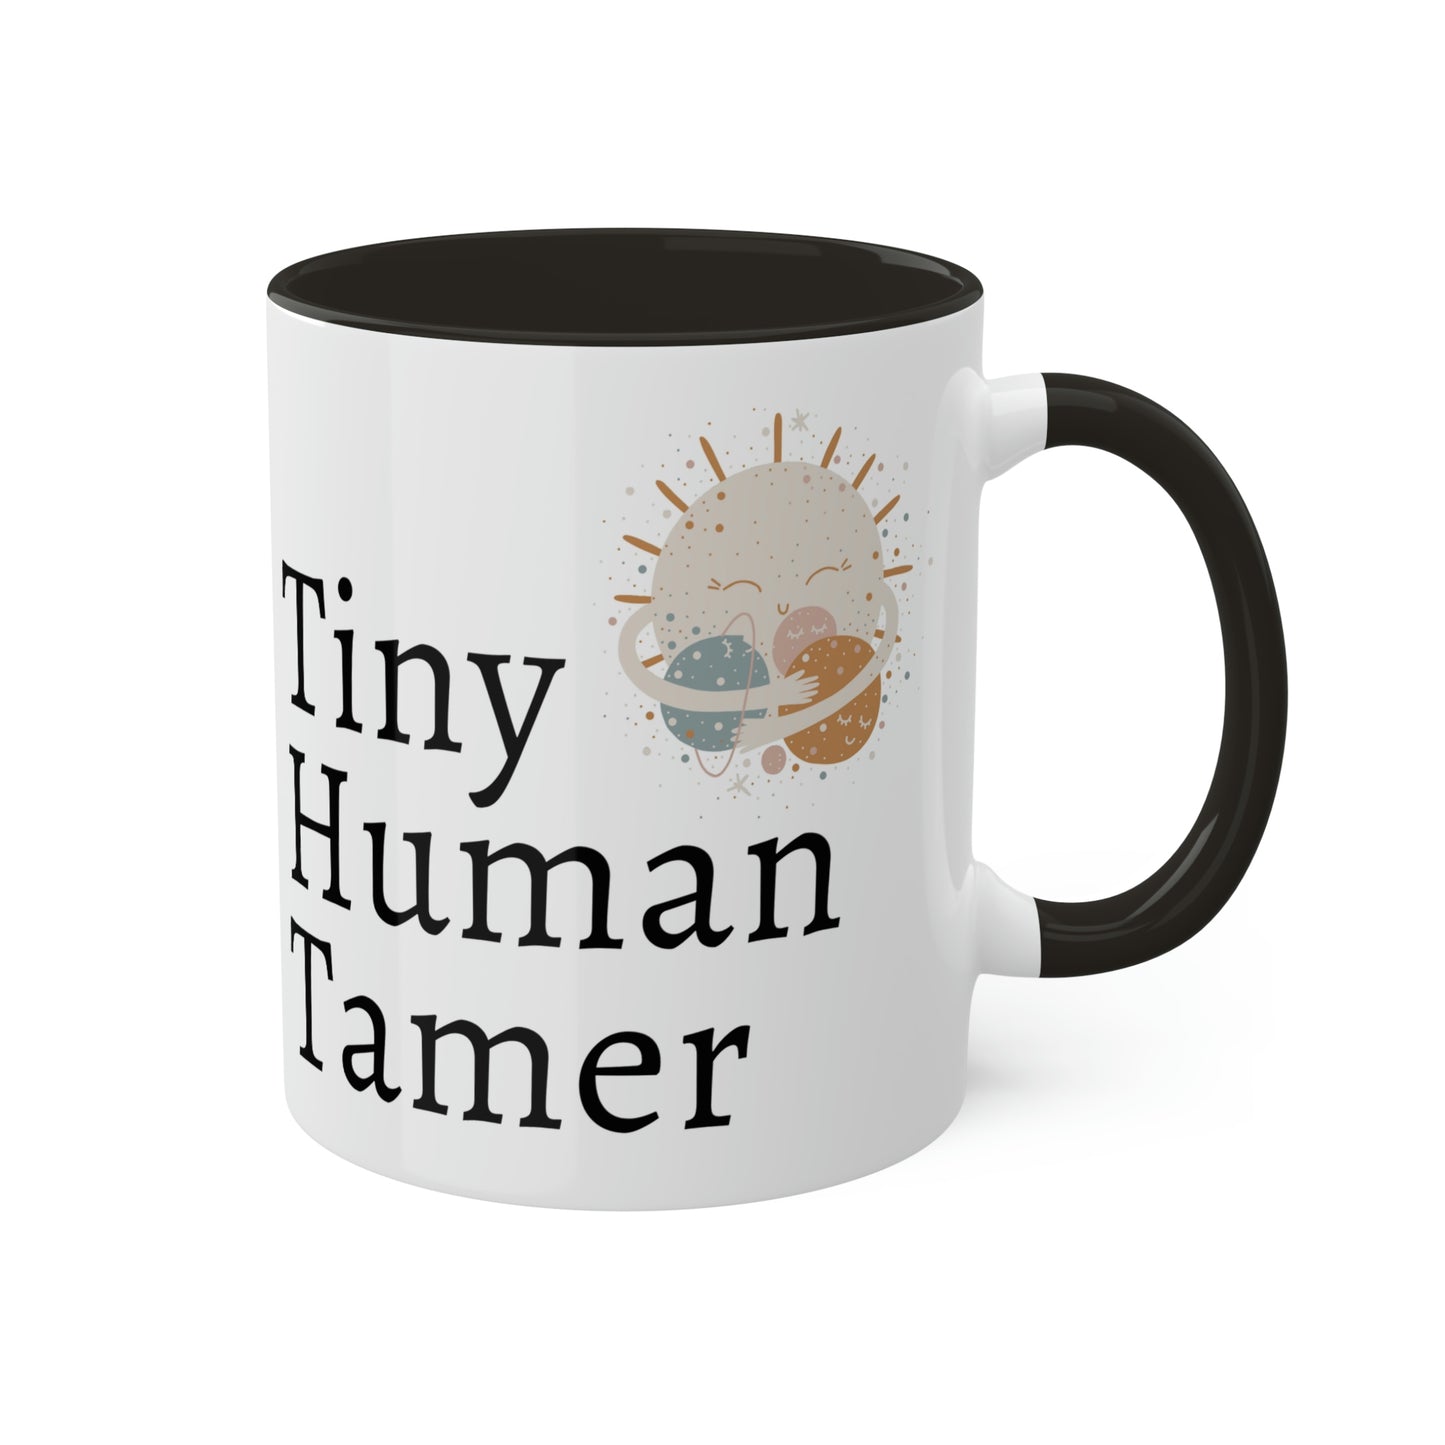 Tiny Human Tamer Mug, Parent gift, mom gift, dad gift, teacher gift, care giver gift